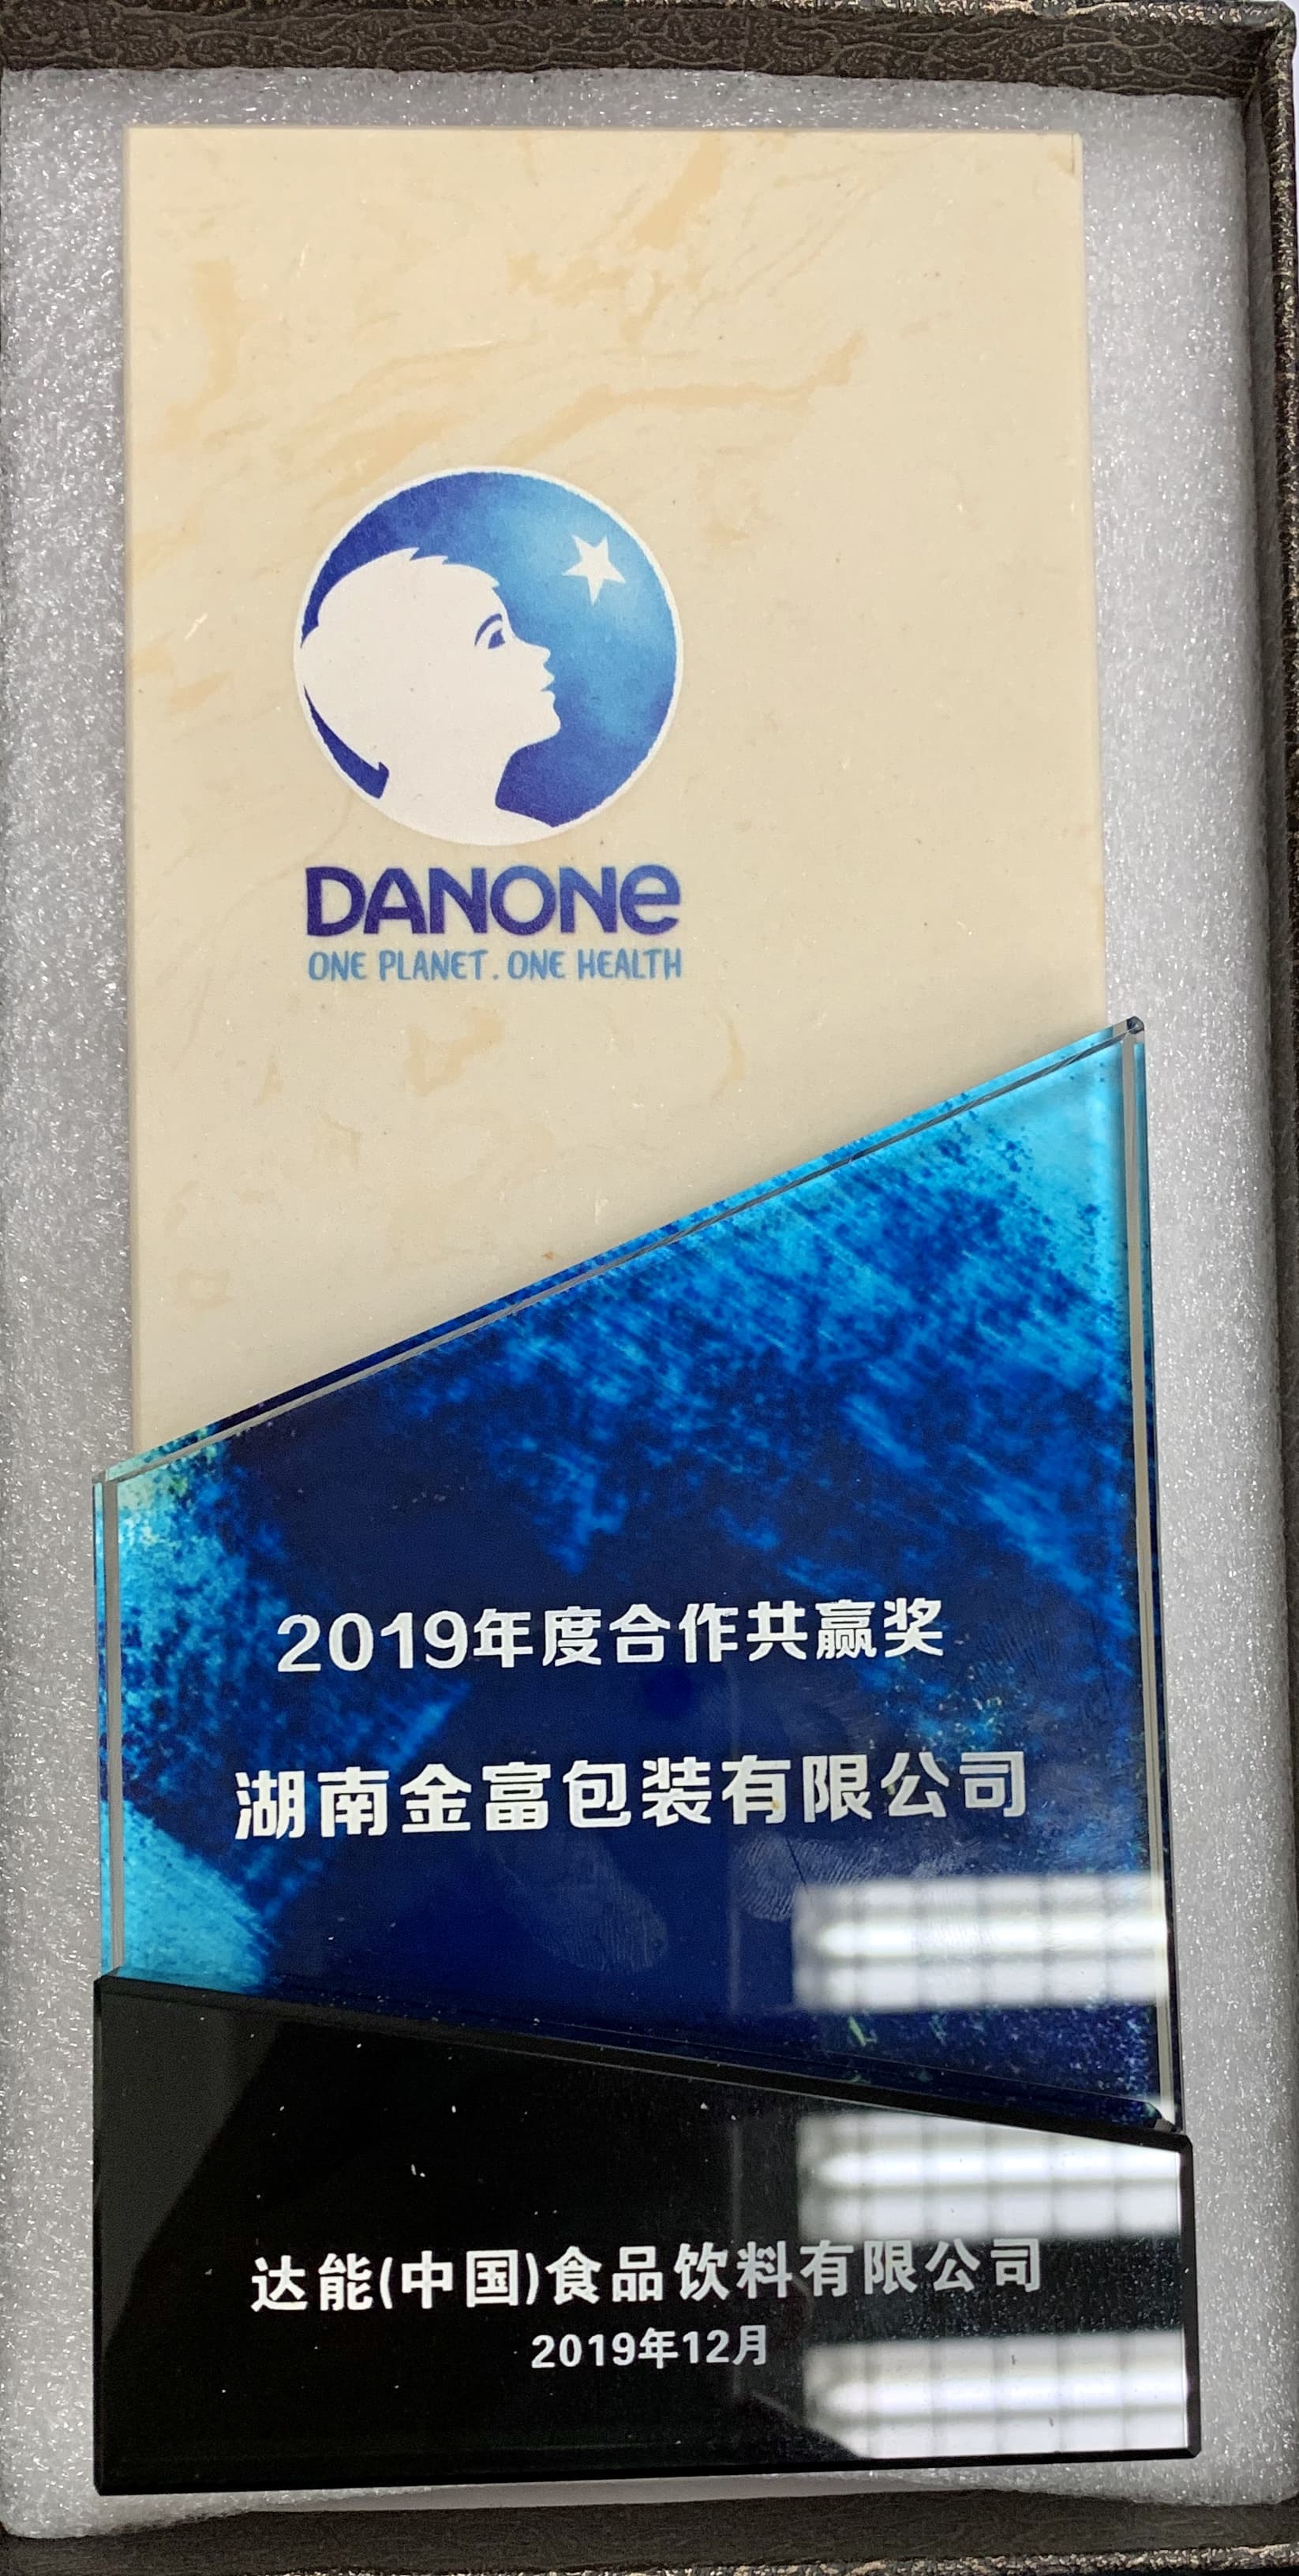 2019年度合作共赢奖（湖南立博ladbrokes）-达能中国颁发